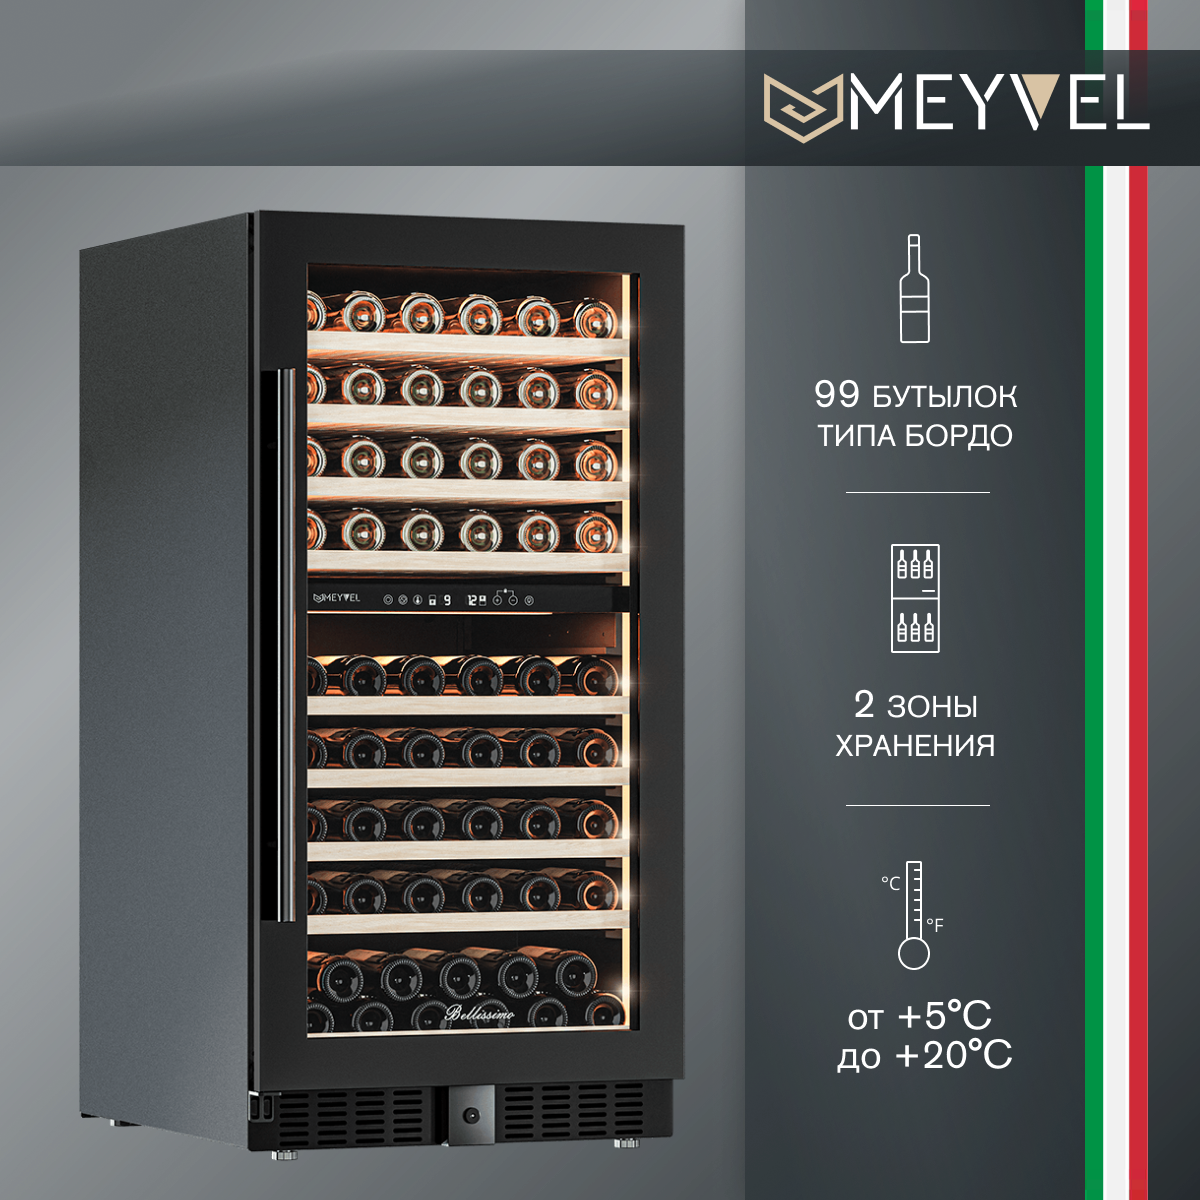 Винный холодильный шкаф Meyvel MV99PRO-KBT2 компрессорный (встраиваемый / отдельностоящий холодильник для вина на 99 бутылок)